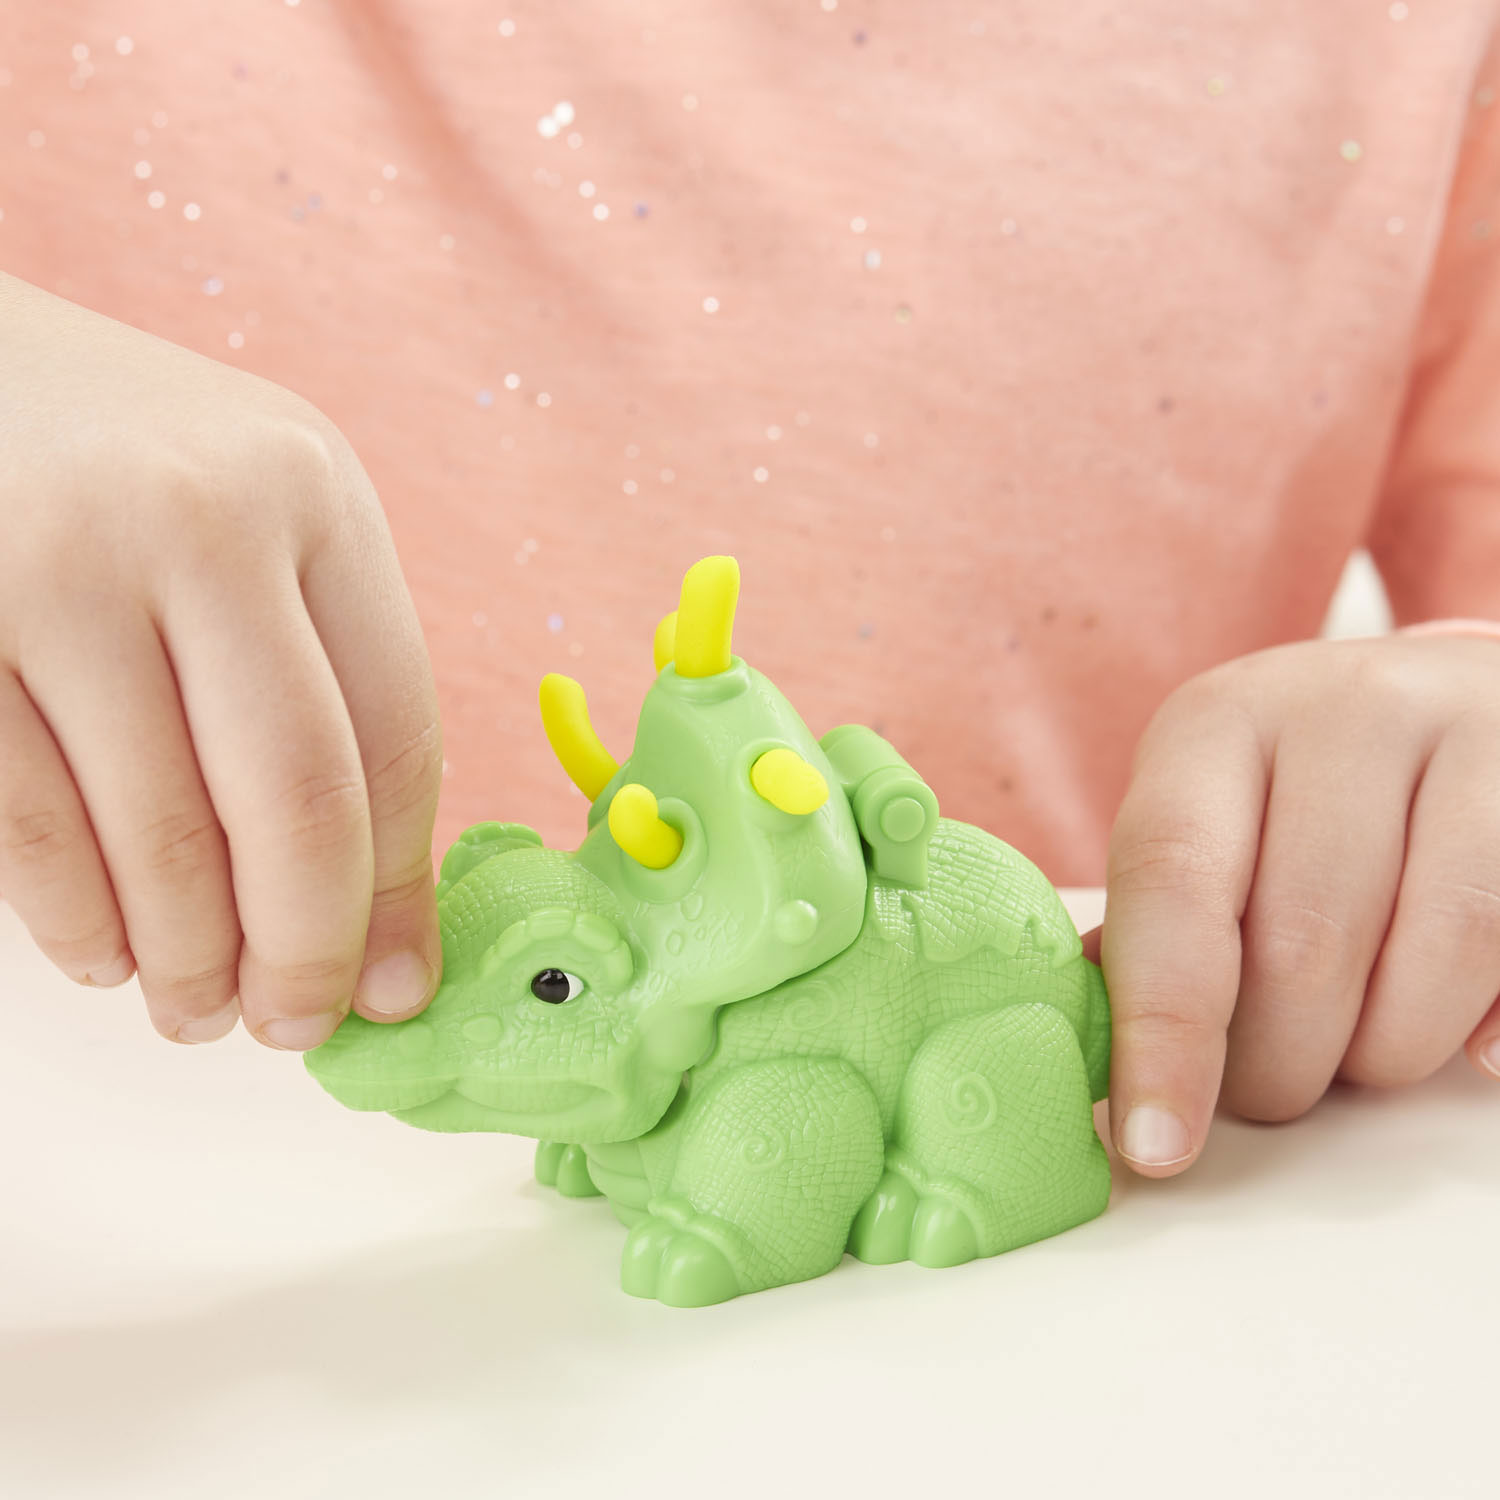 Play-Doh Dino Gereedschap